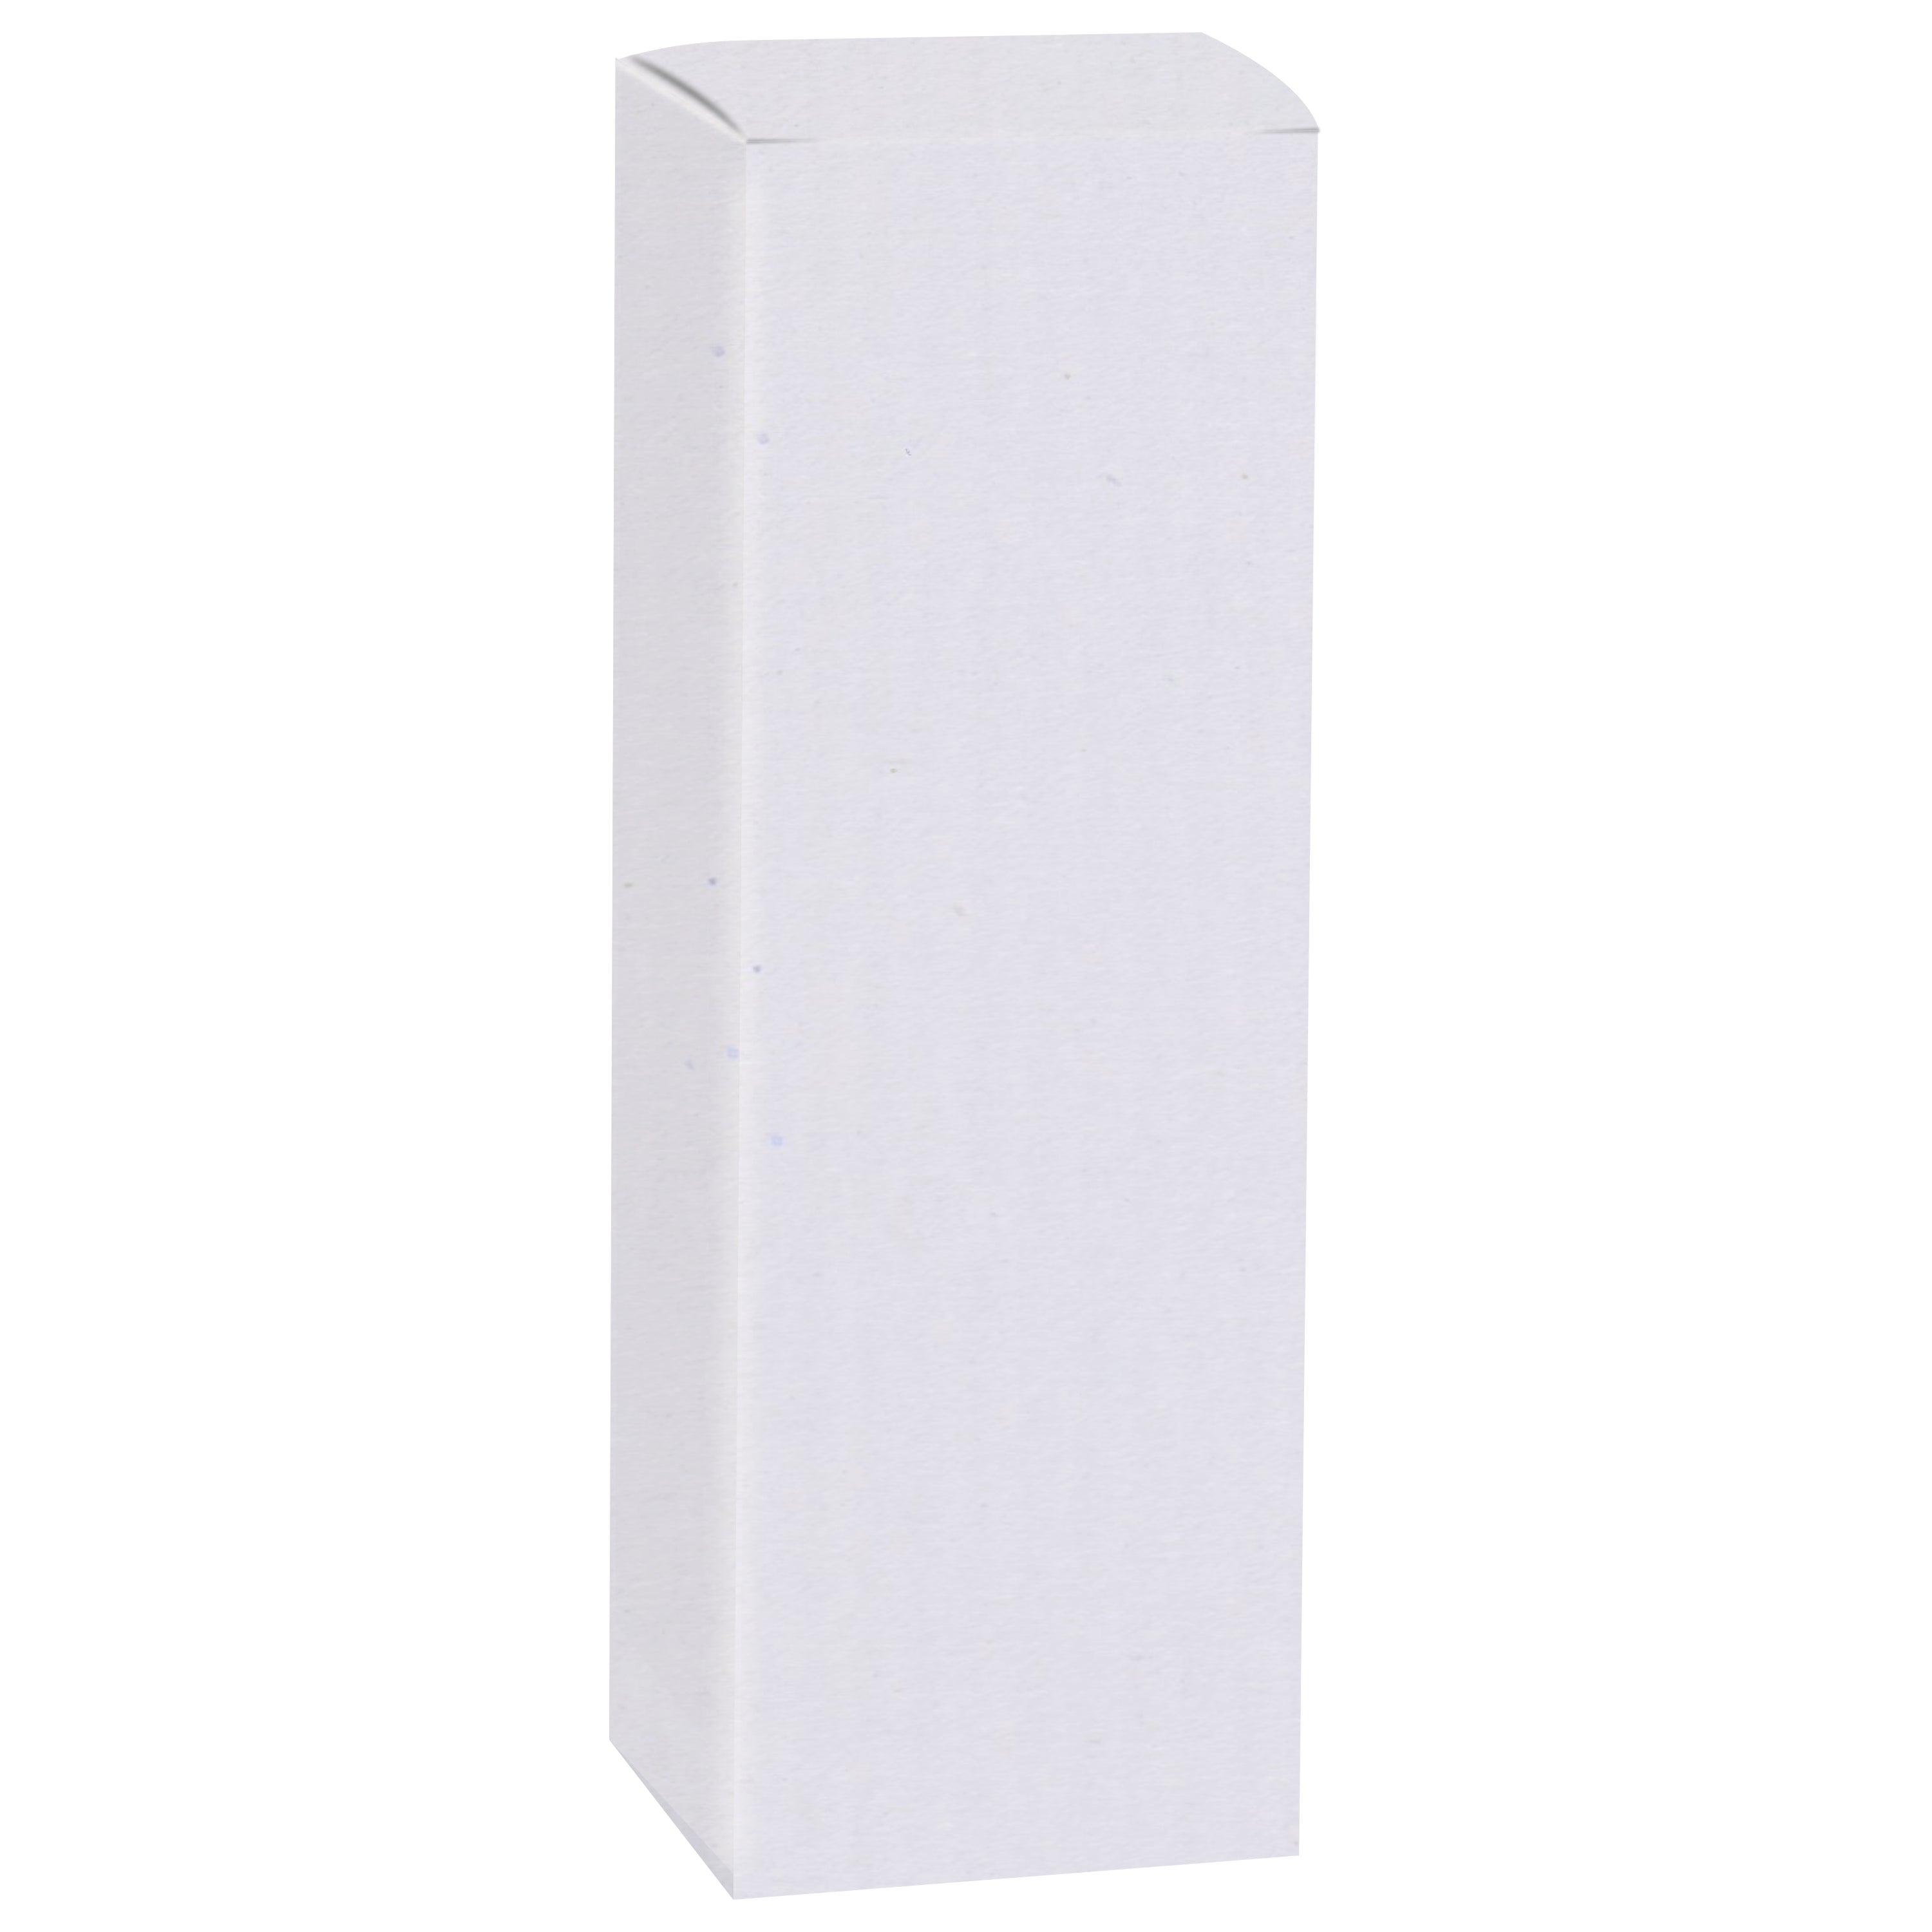 Zenvista Premium White Corrugated Box |11 x 4 x 4 cm | Pack of 20